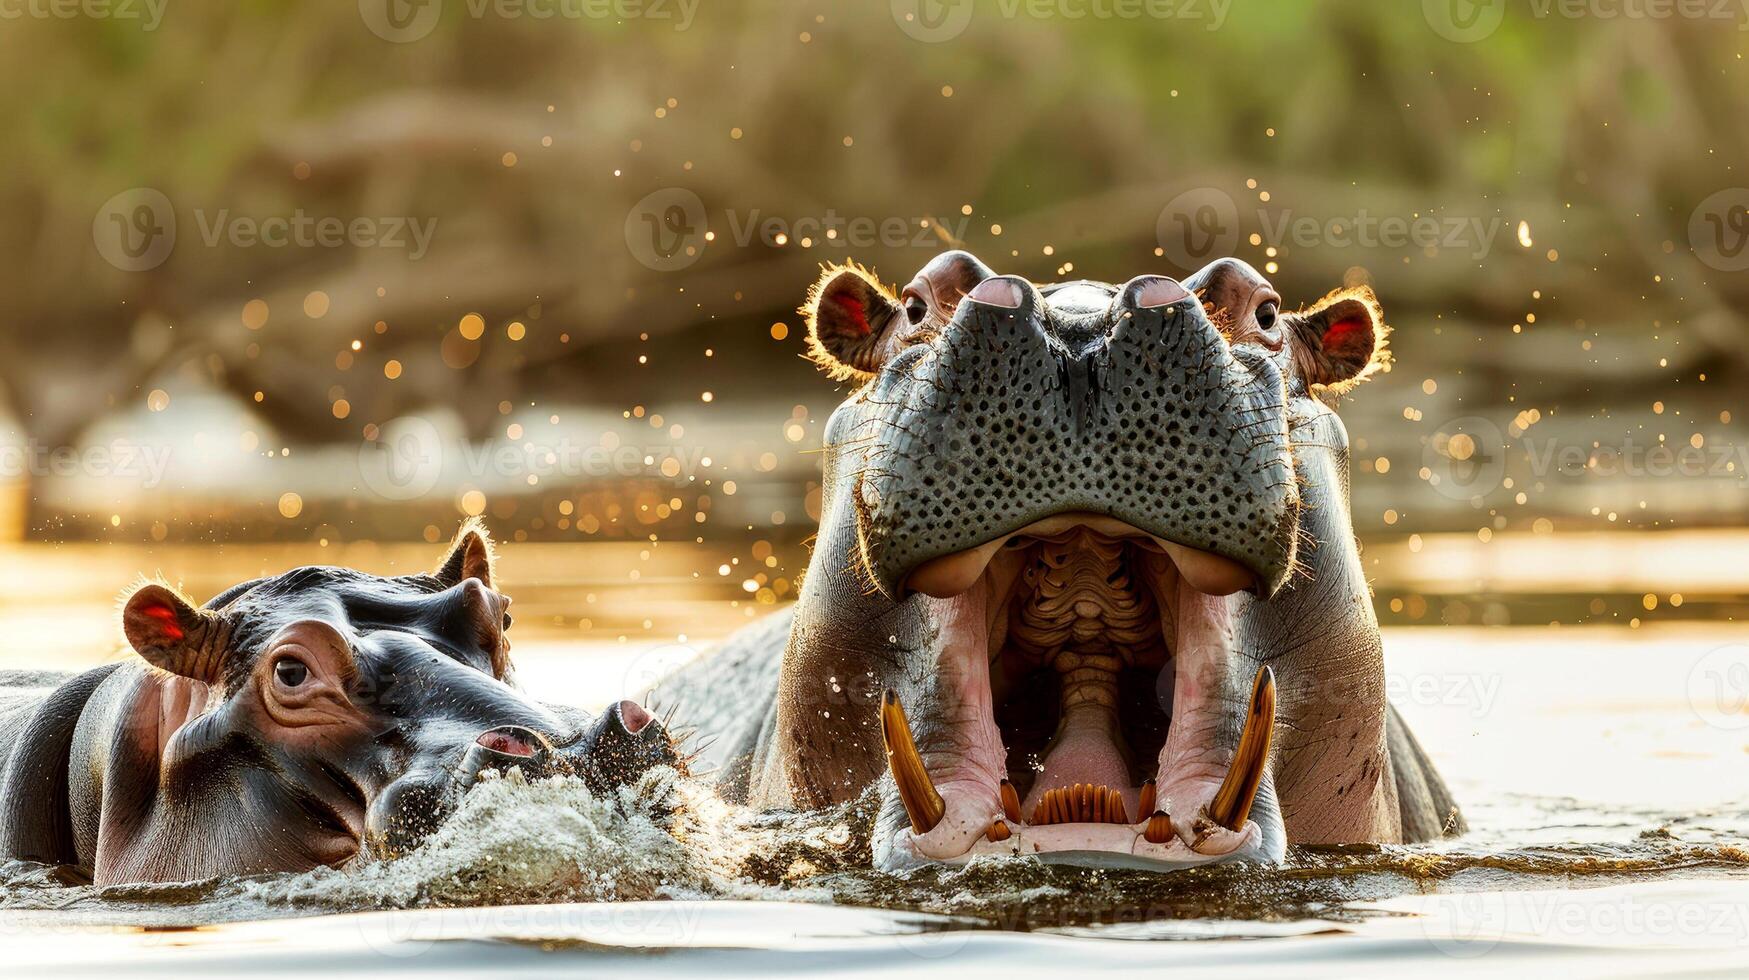 imagen capturar enlace Entre hipopótamo madre y su becerro. belleza de fauna silvestre guiones bajos significado de conservación. promoviendo fauna silvestre Excursiones, safari aventuras, ambiental iniciativas foto